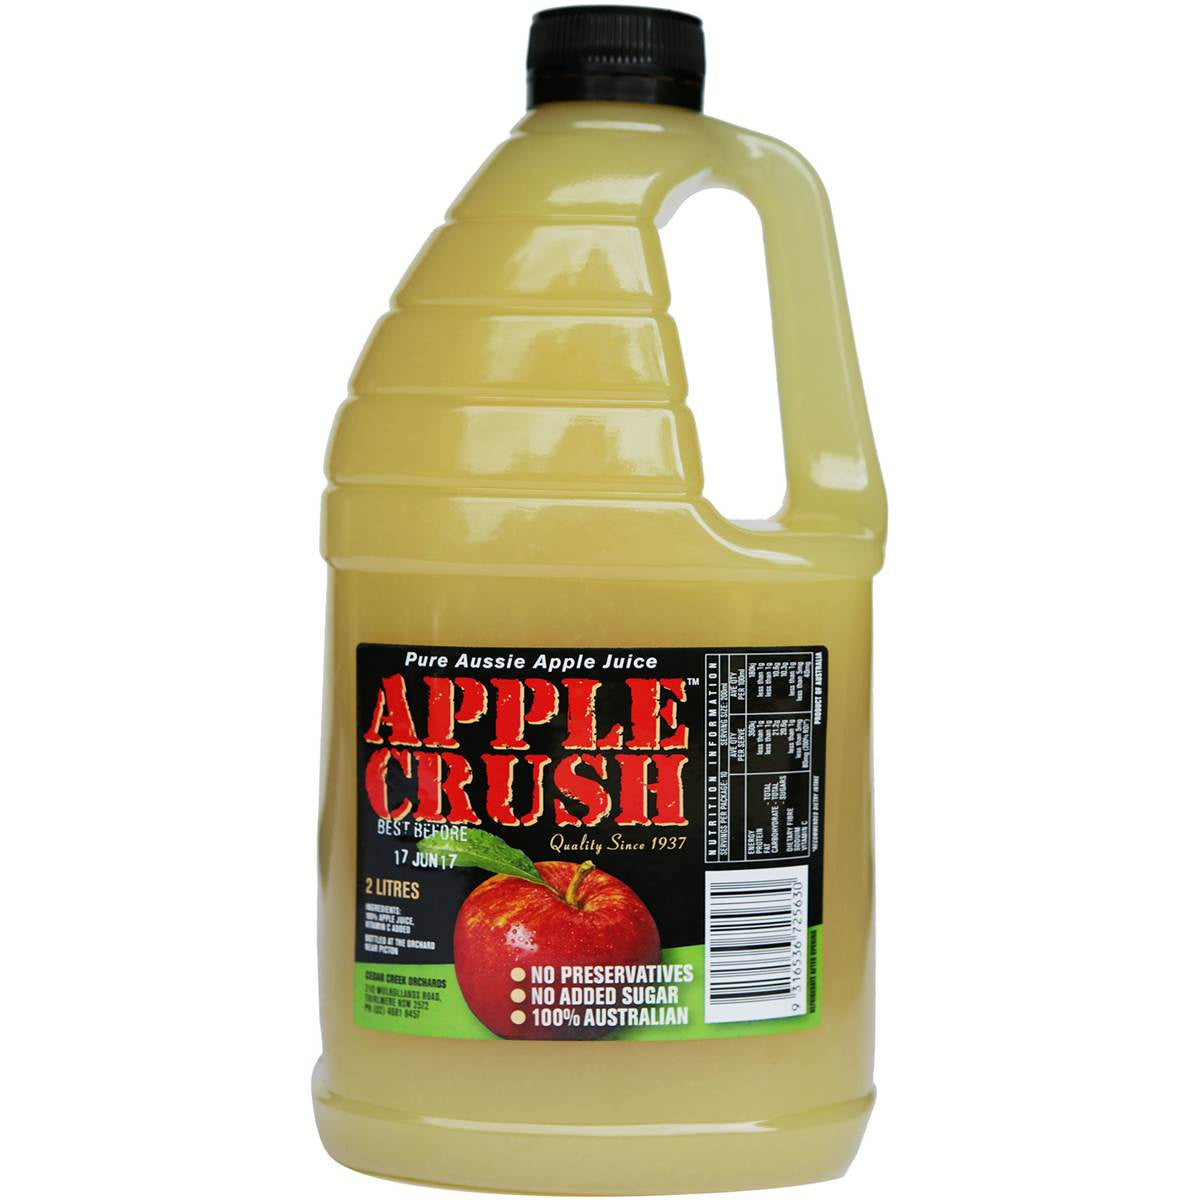 Cedar Creek Cloudy Apple Crush Juice 2L